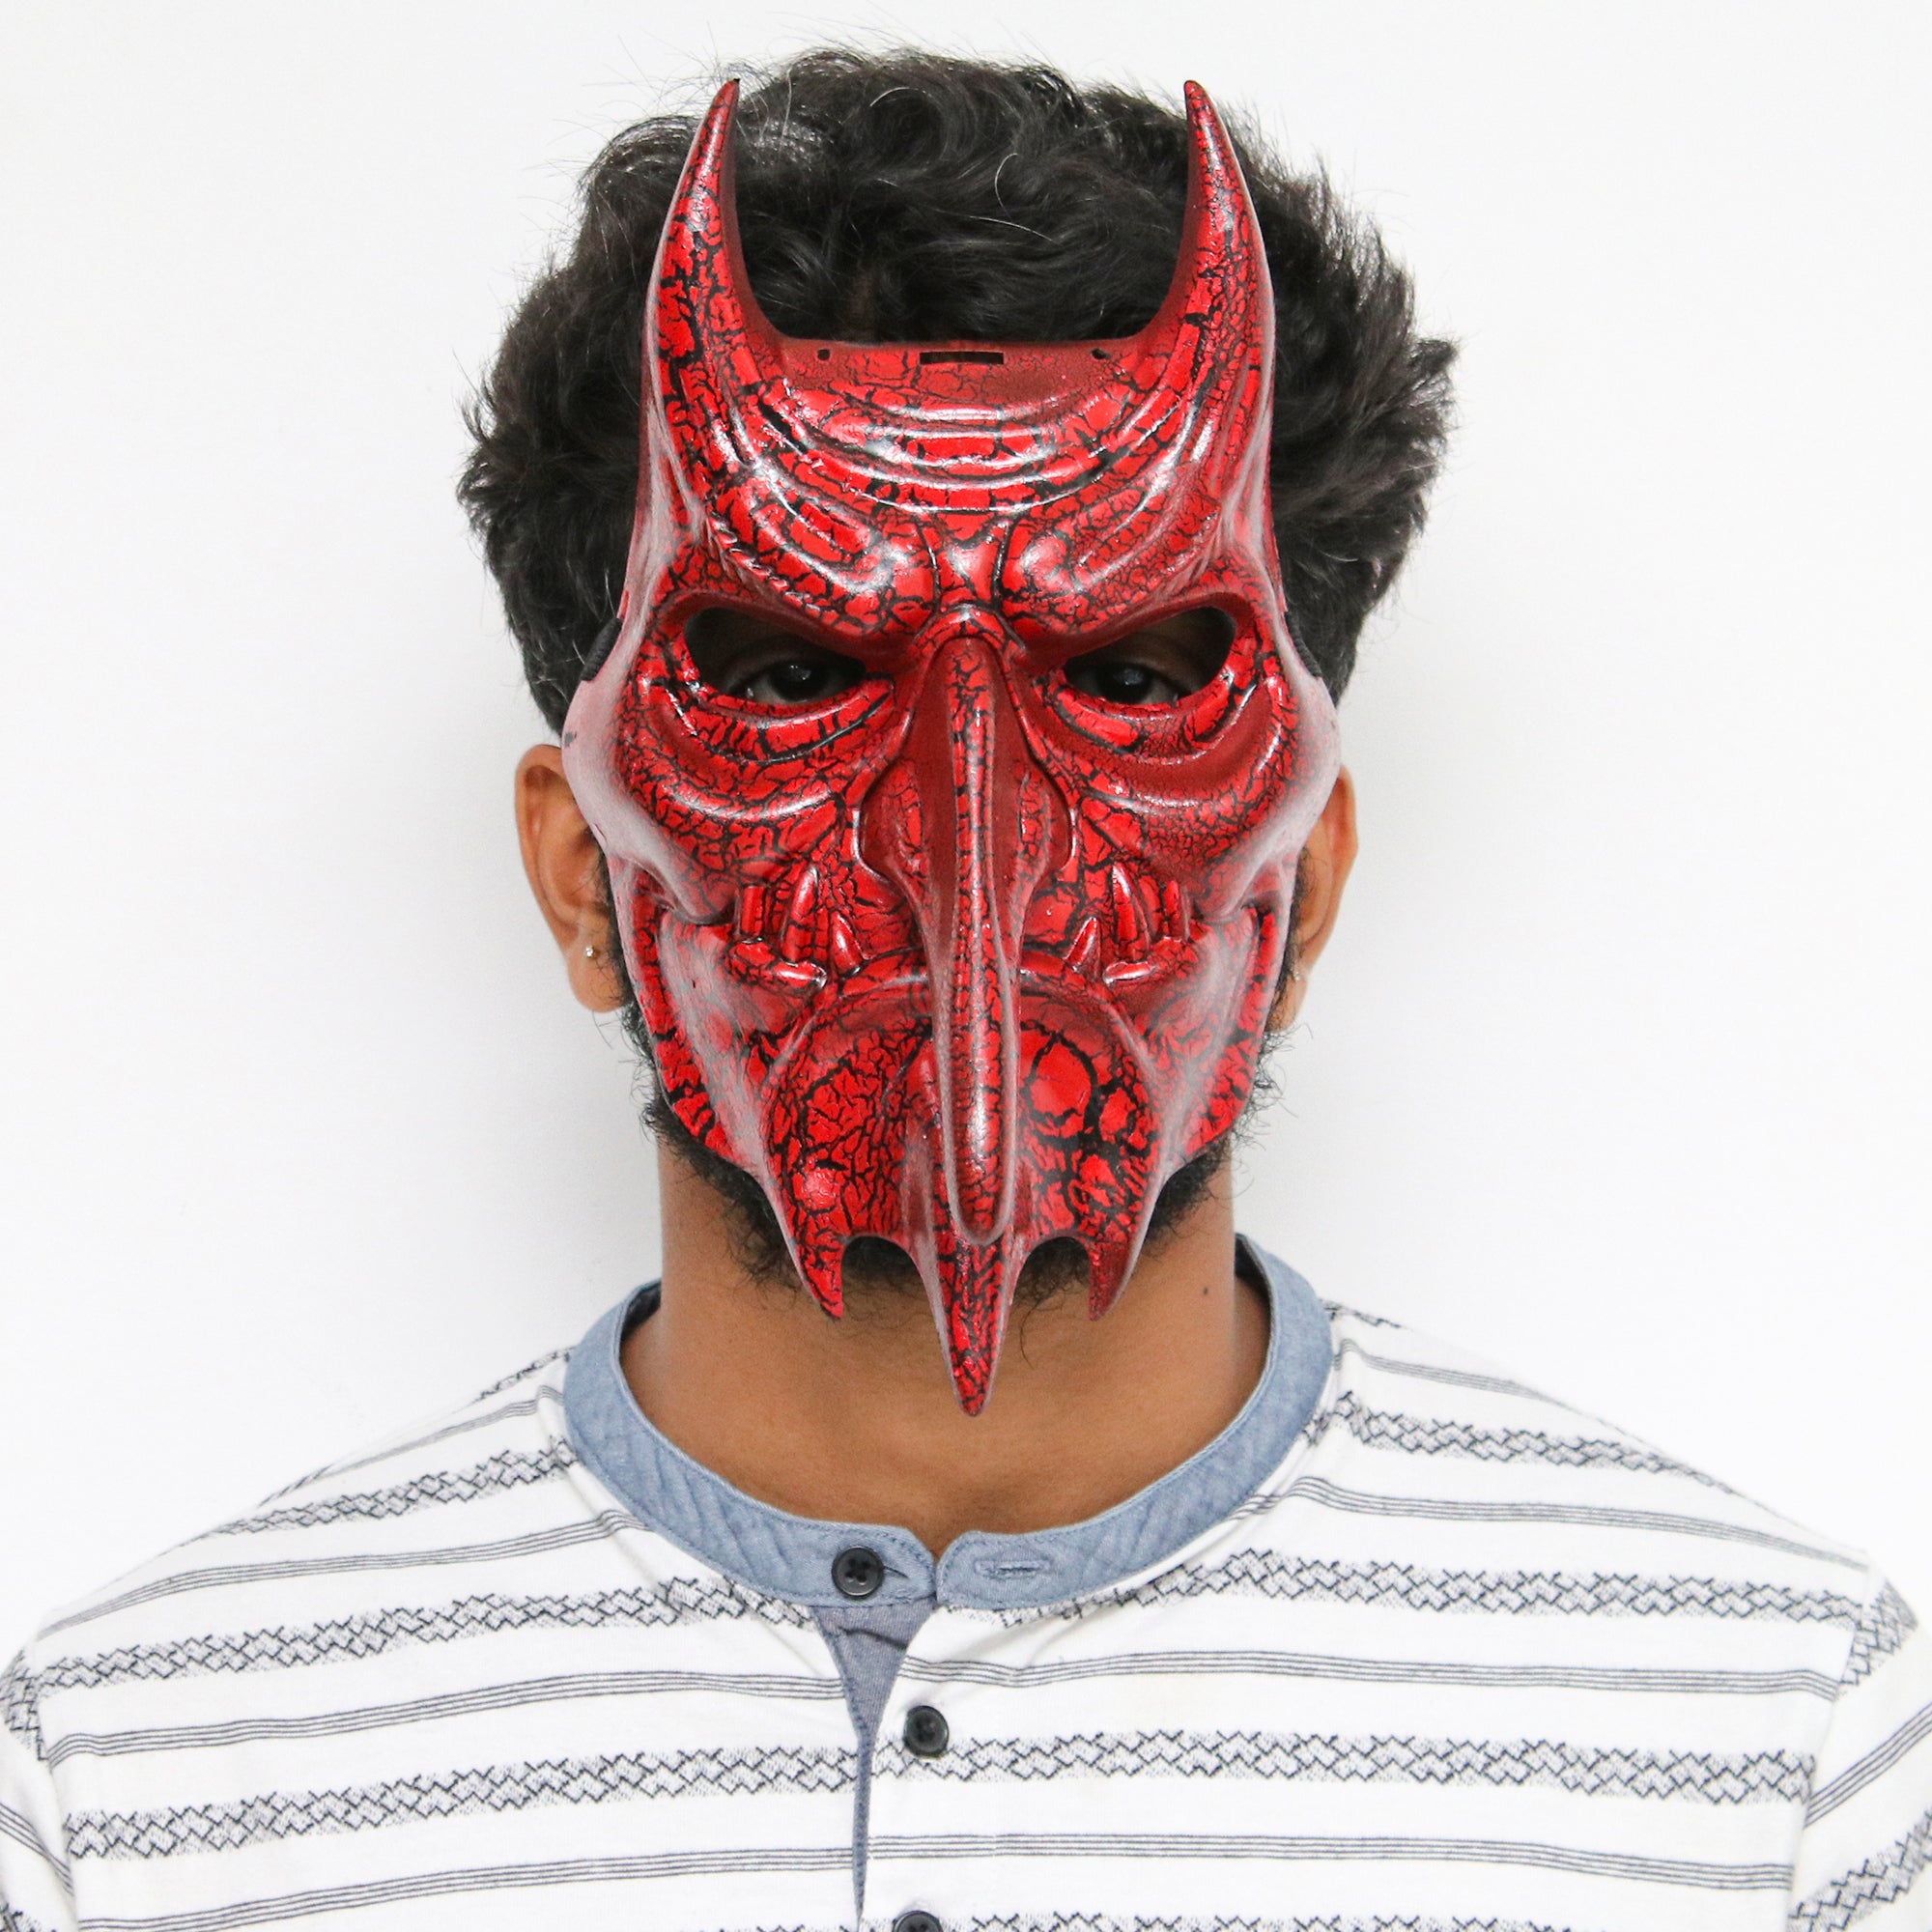 Long Nose Red Devil Mask